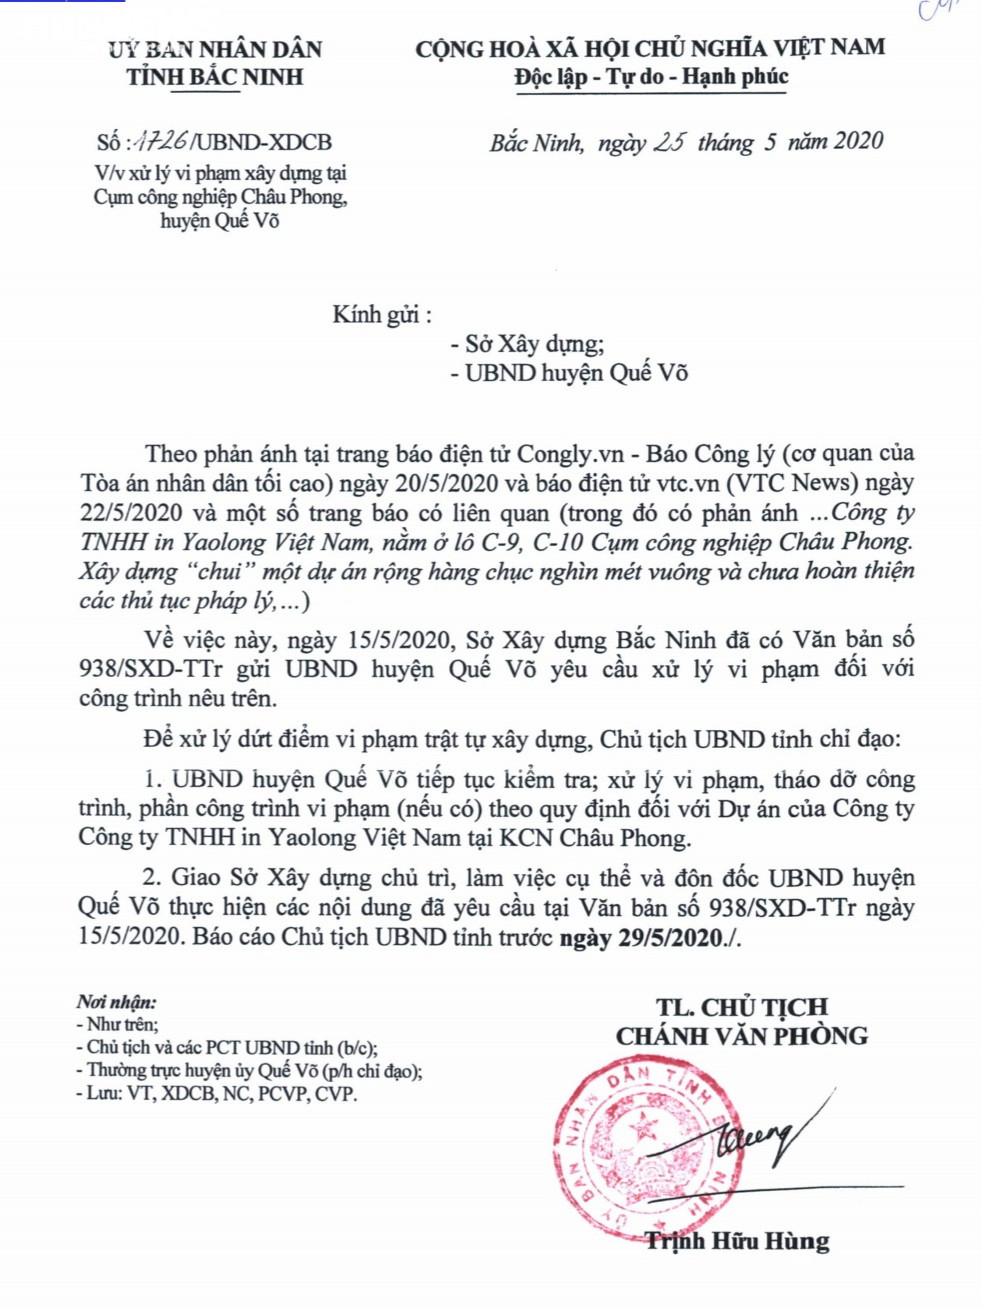 Chủ tịch Bắc Ninh chỉ đạo xử lý việc xây “chui” dự án của Công y Yaolong